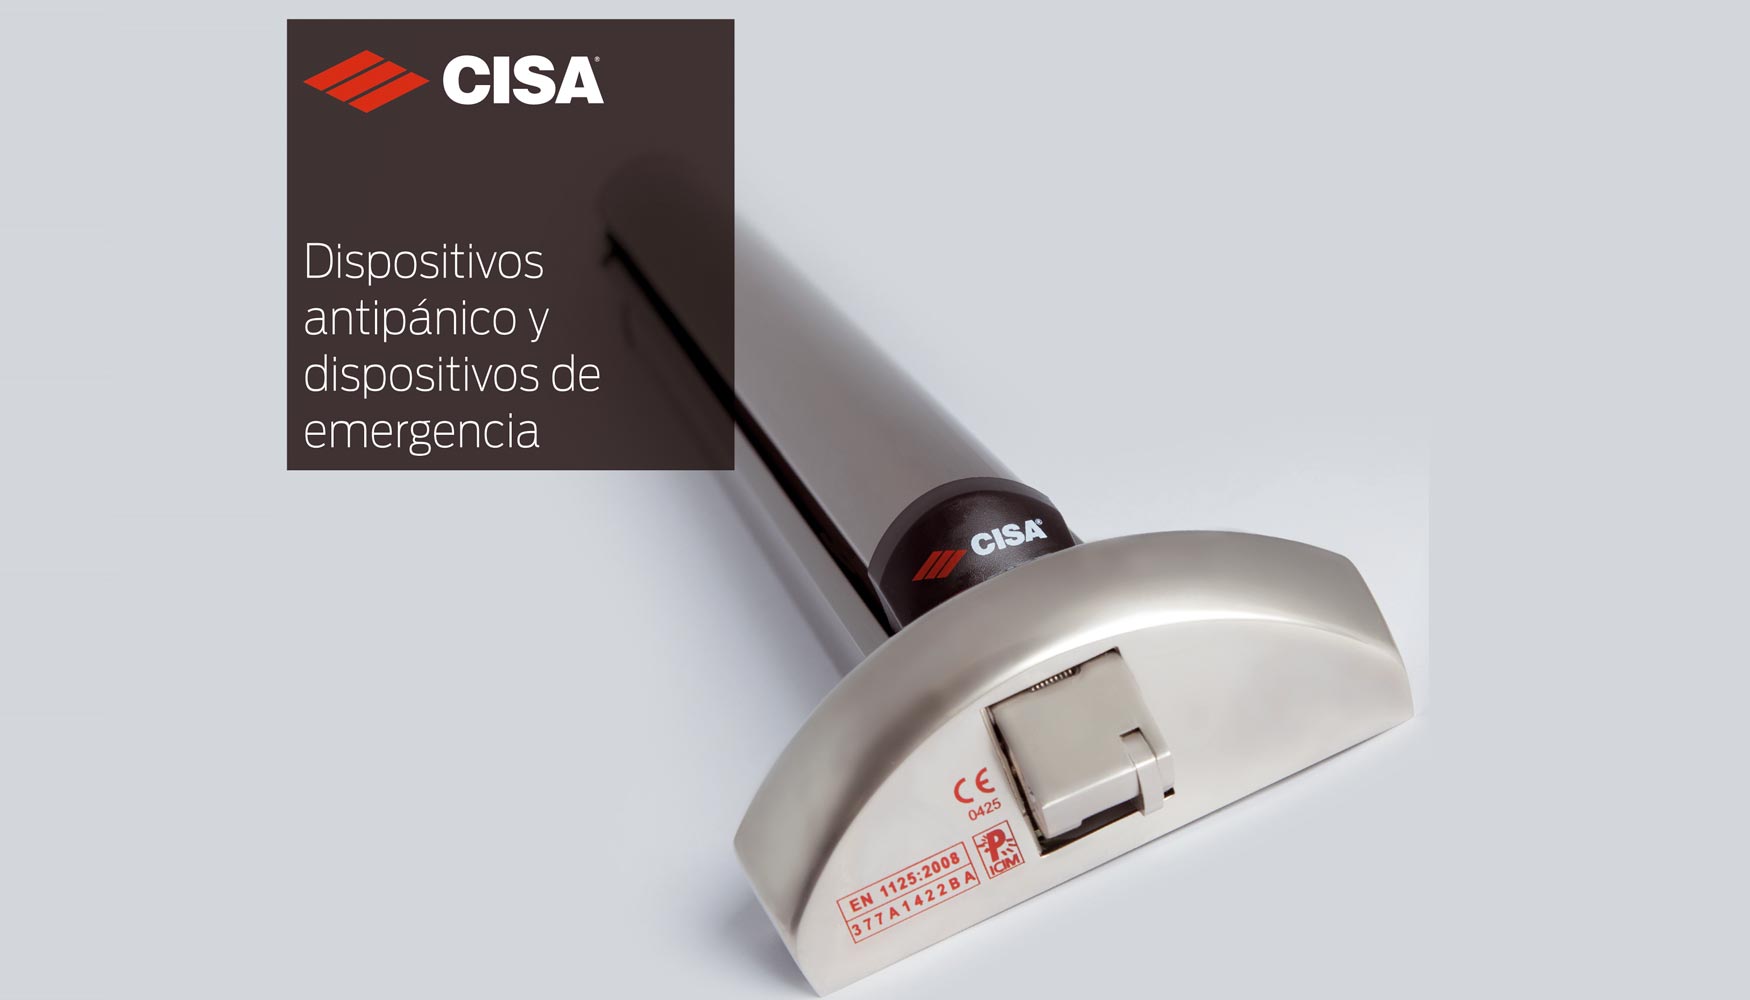 Dispositivos antipnico y dispositivos de emergencia de Cisa